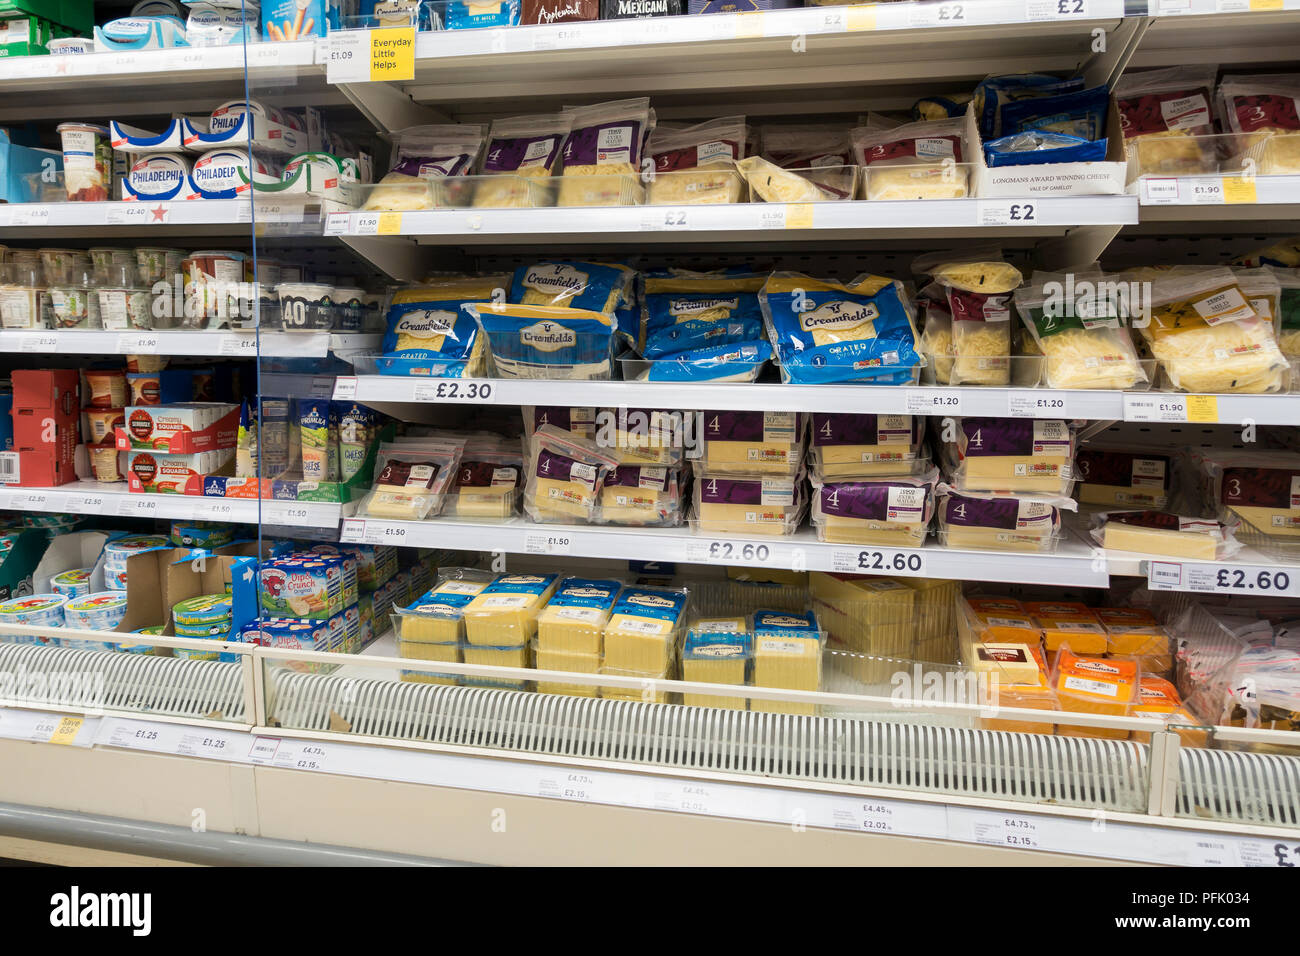 Le fromage d'afficher (dans l'emballage en plastique) dans un supermarché Tesco, UK Banque D'Images